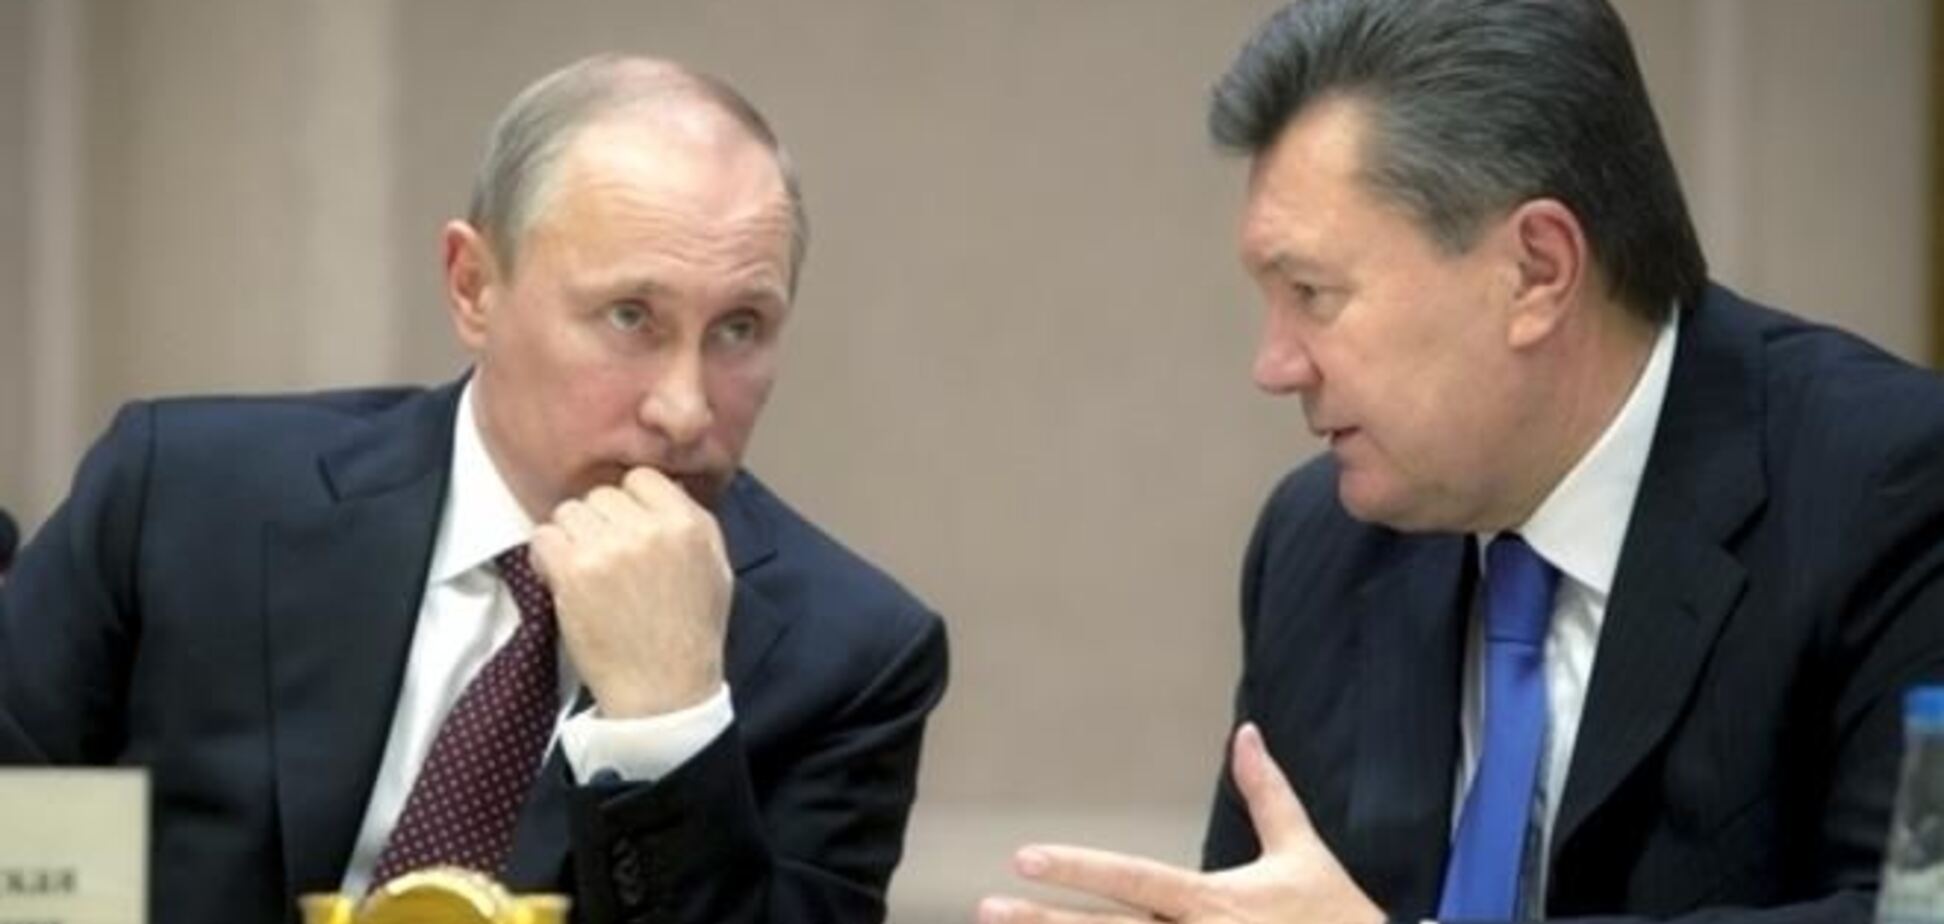 Політолог припускає, що Янукович поїхав до Москви за компроматом на Тимошенко